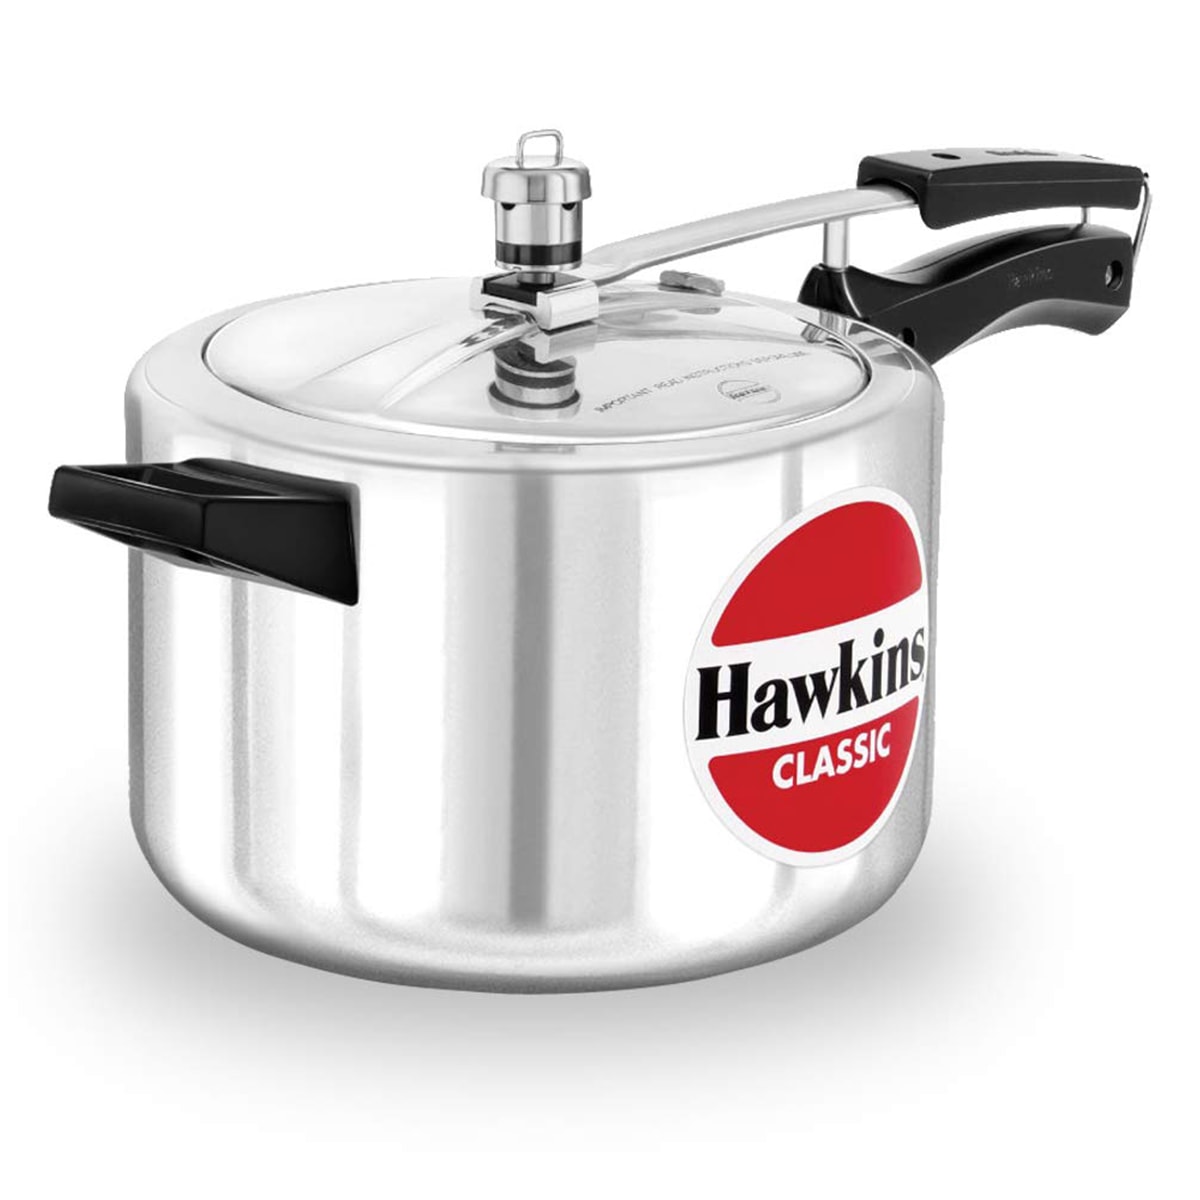 Buy Hawkins Classic Aluminium 5 Litre Pressure Cooker Cl50 - 2.37 kg